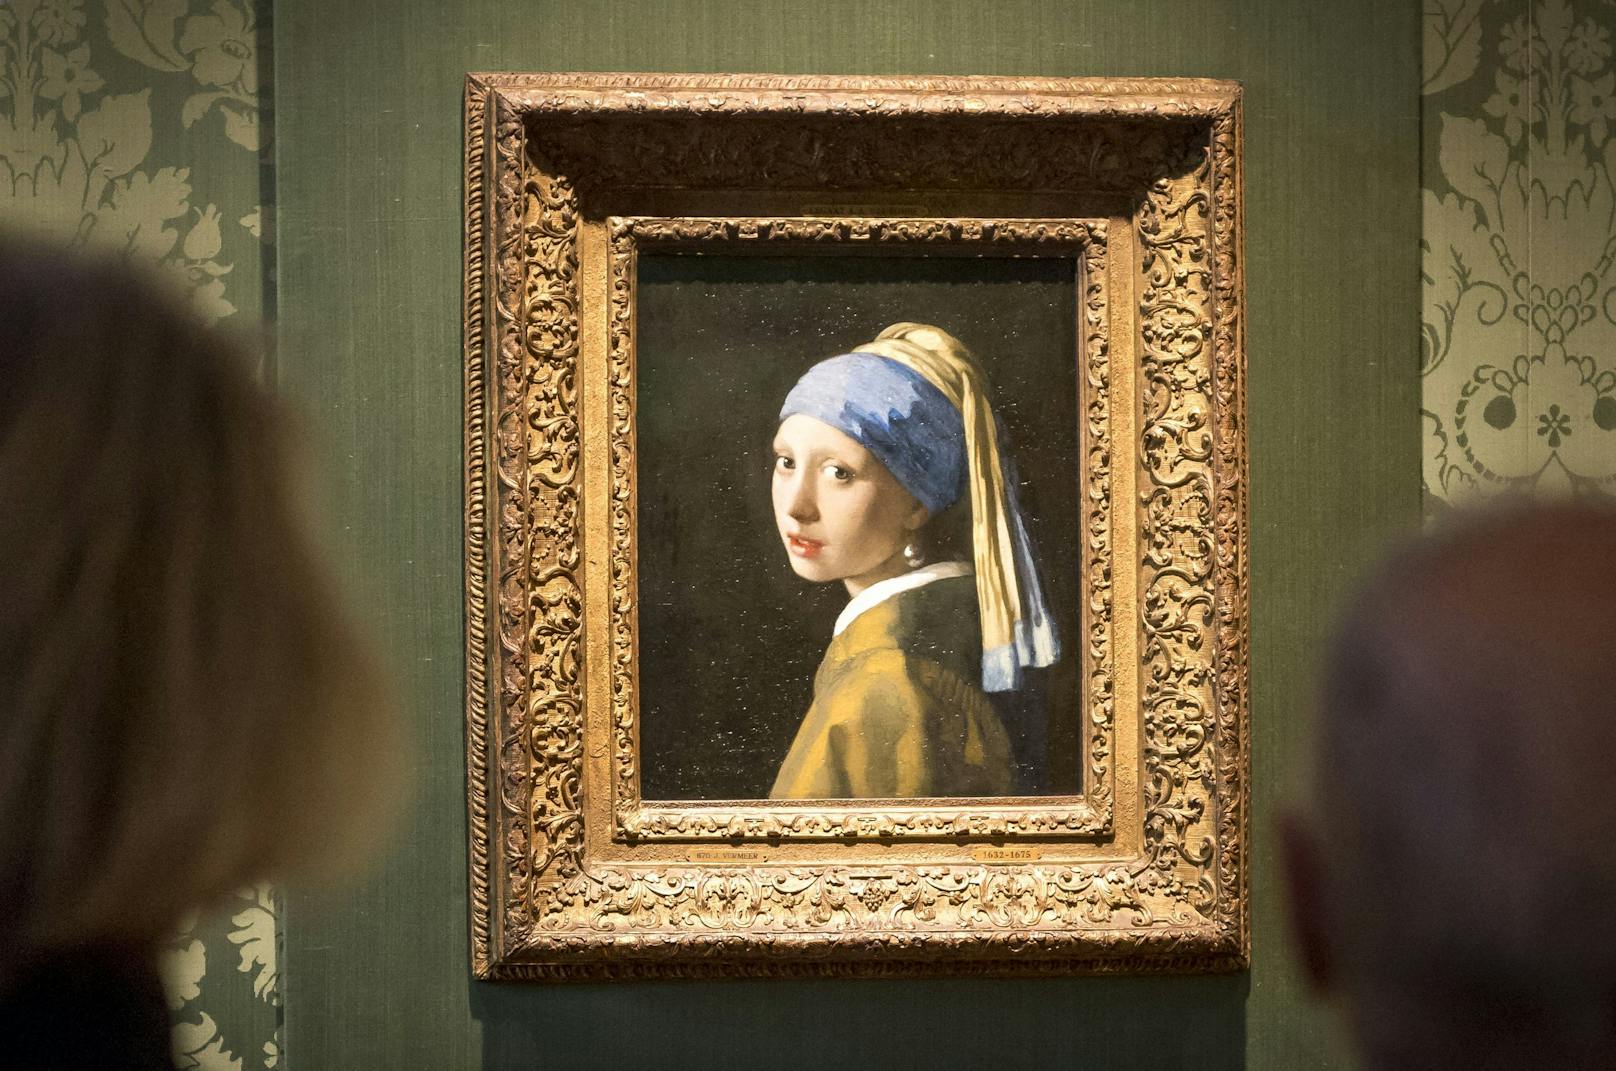 "Das Mädchen mit dem Perlenohrgehänge" aus dem Jahr 1665 ist das bekannteste Werk des niederländischen Barock-Malers Johannes Vermeer.